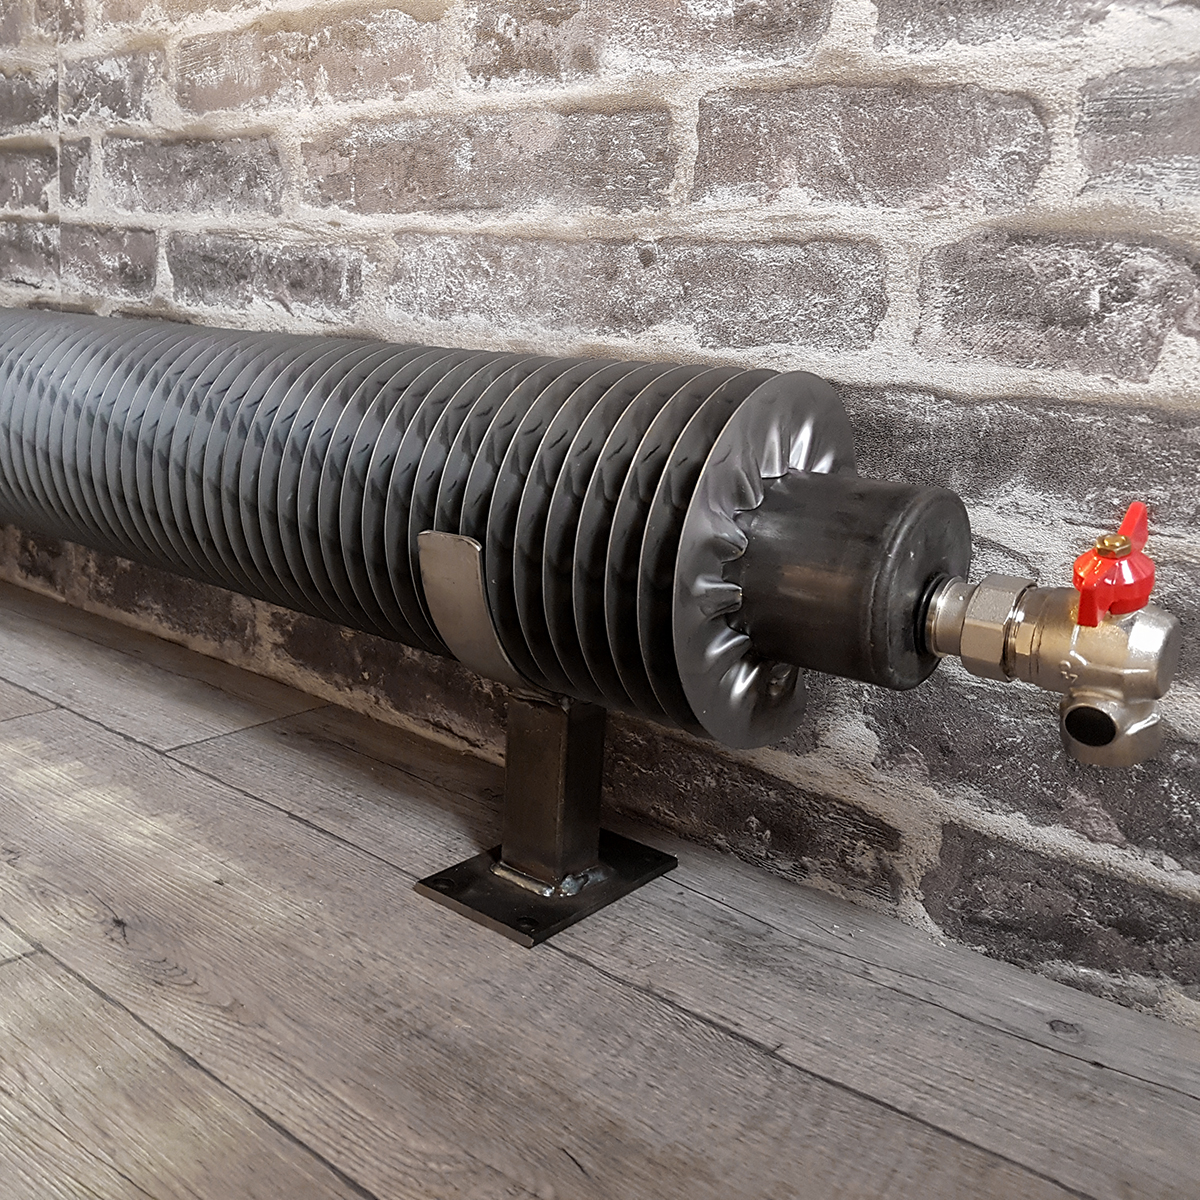 TUBE AILETTES : le radiateur tube ailettes style industriel - le radiateur industriel eau chaude dont la pureté du tube rond aux fines ailettes en acier brut vous séduira